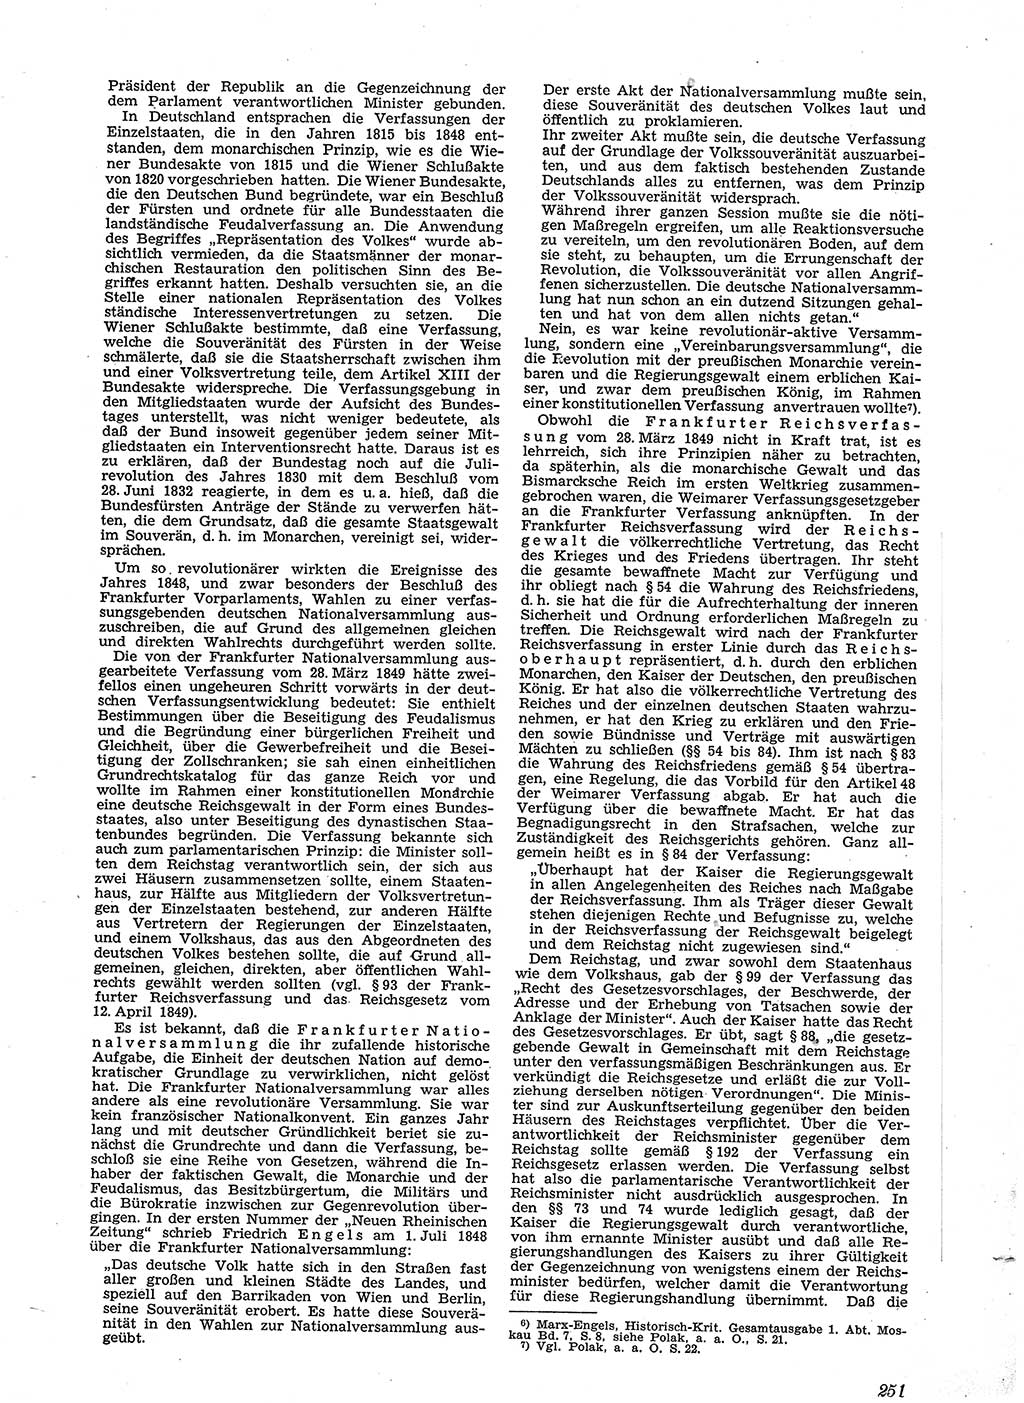 Neue Justiz (NJ), Zeitschrift für Recht und Rechtswissenschaft [Sowjetische Besatzungszone (SBZ) Deutschland], 2. Jahrgang 1948, Seite 251 (NJ SBZ Dtl. 1948, S. 251)